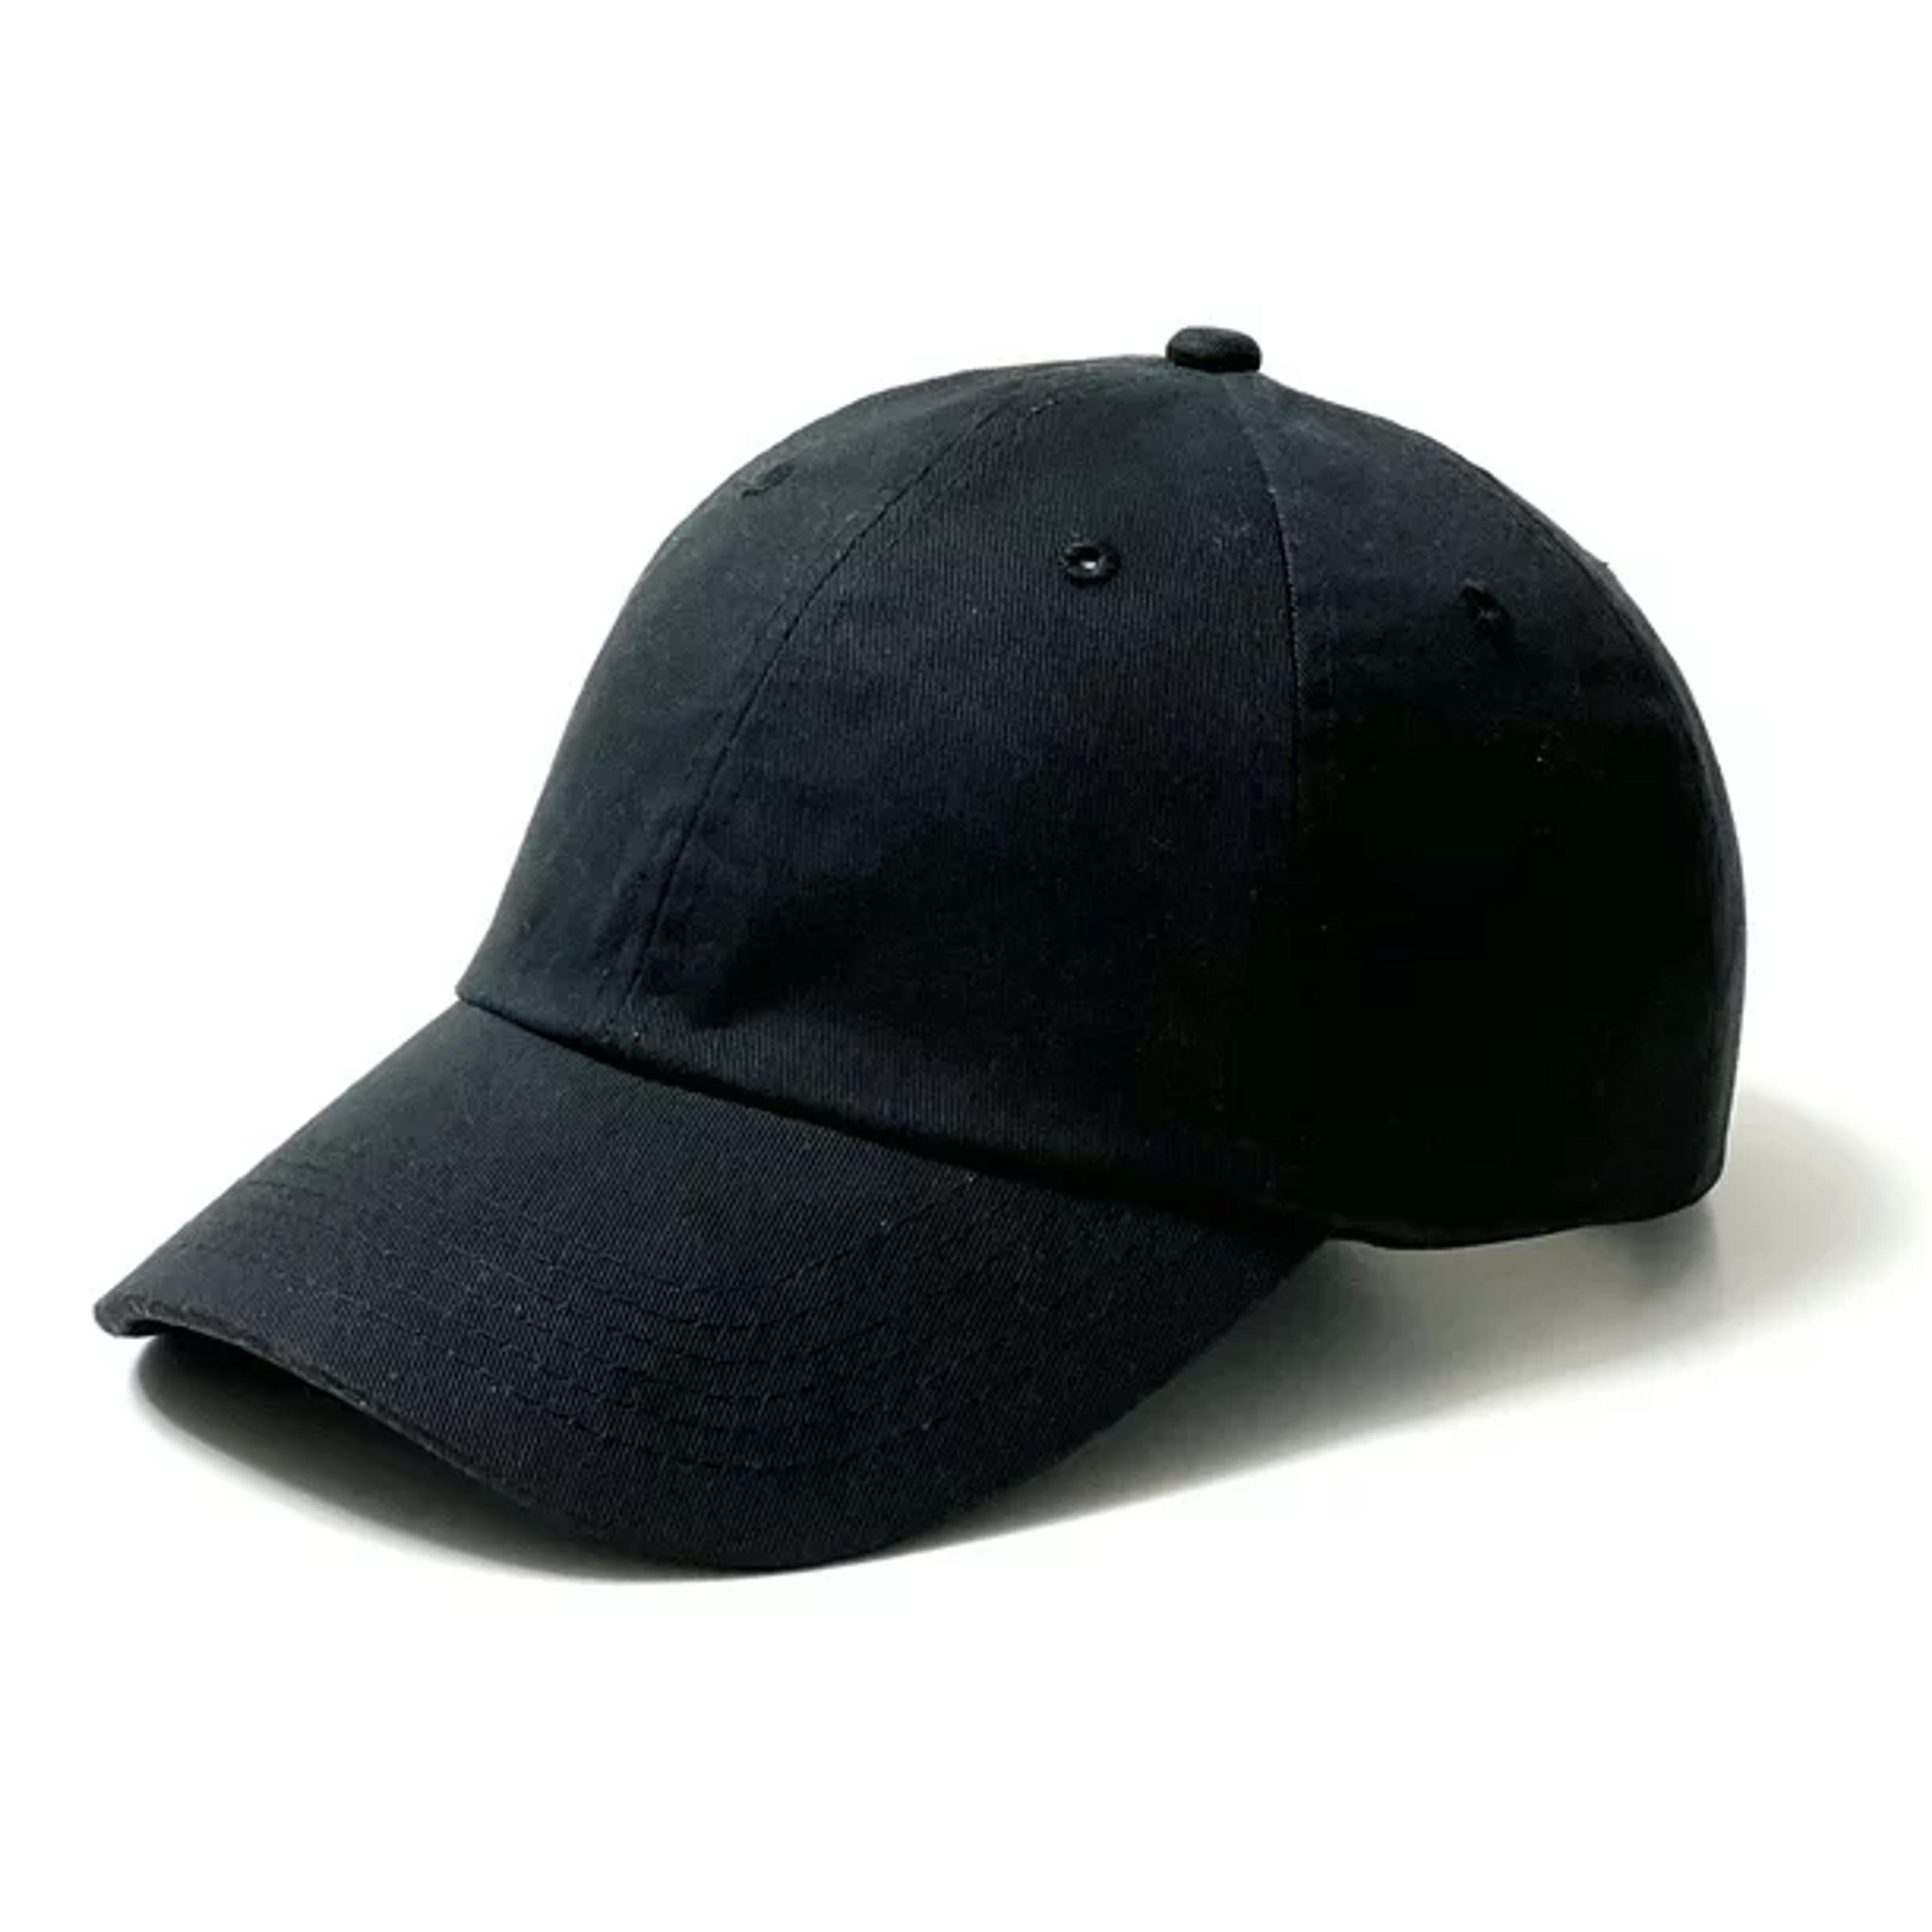 Epsilot Low Profile Cotton Unisex Baseball Cap Dad Hat Adjustable Unconstructed Plain Cap in Black - Walmart.com